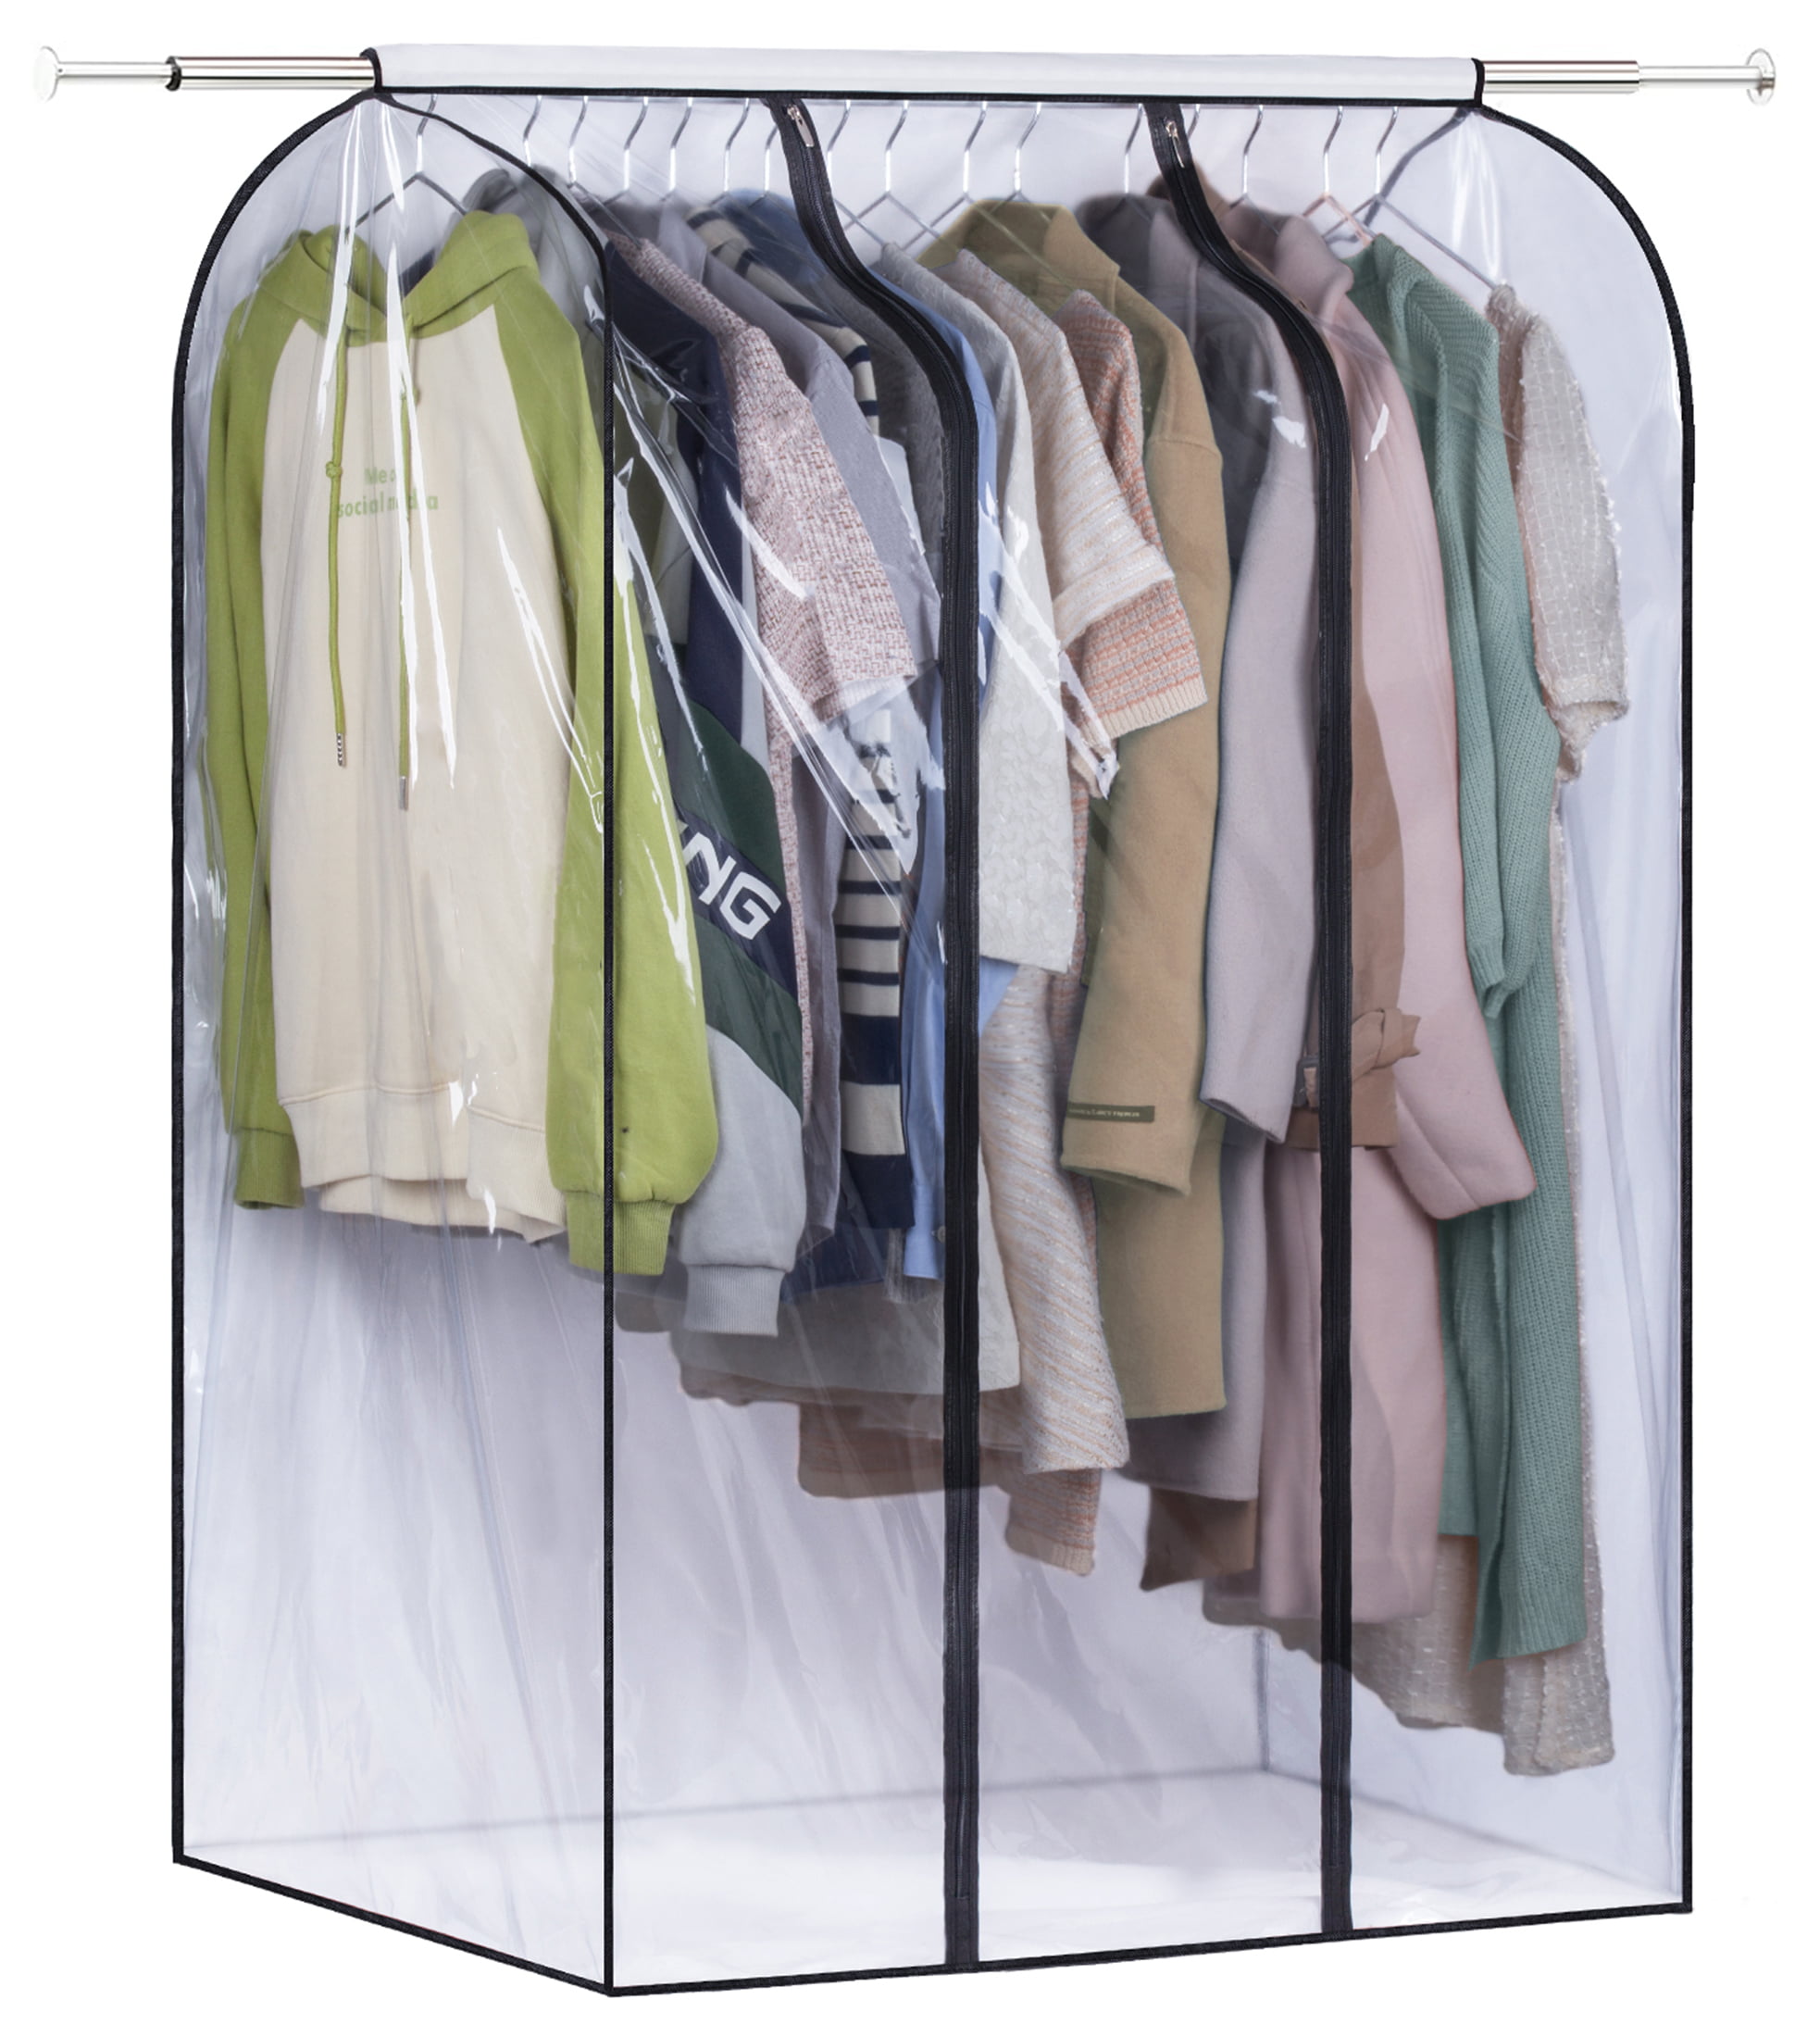 5x Garment Bag Cover Dress Suit Clothes Coat Protector Dustproof for Closet 